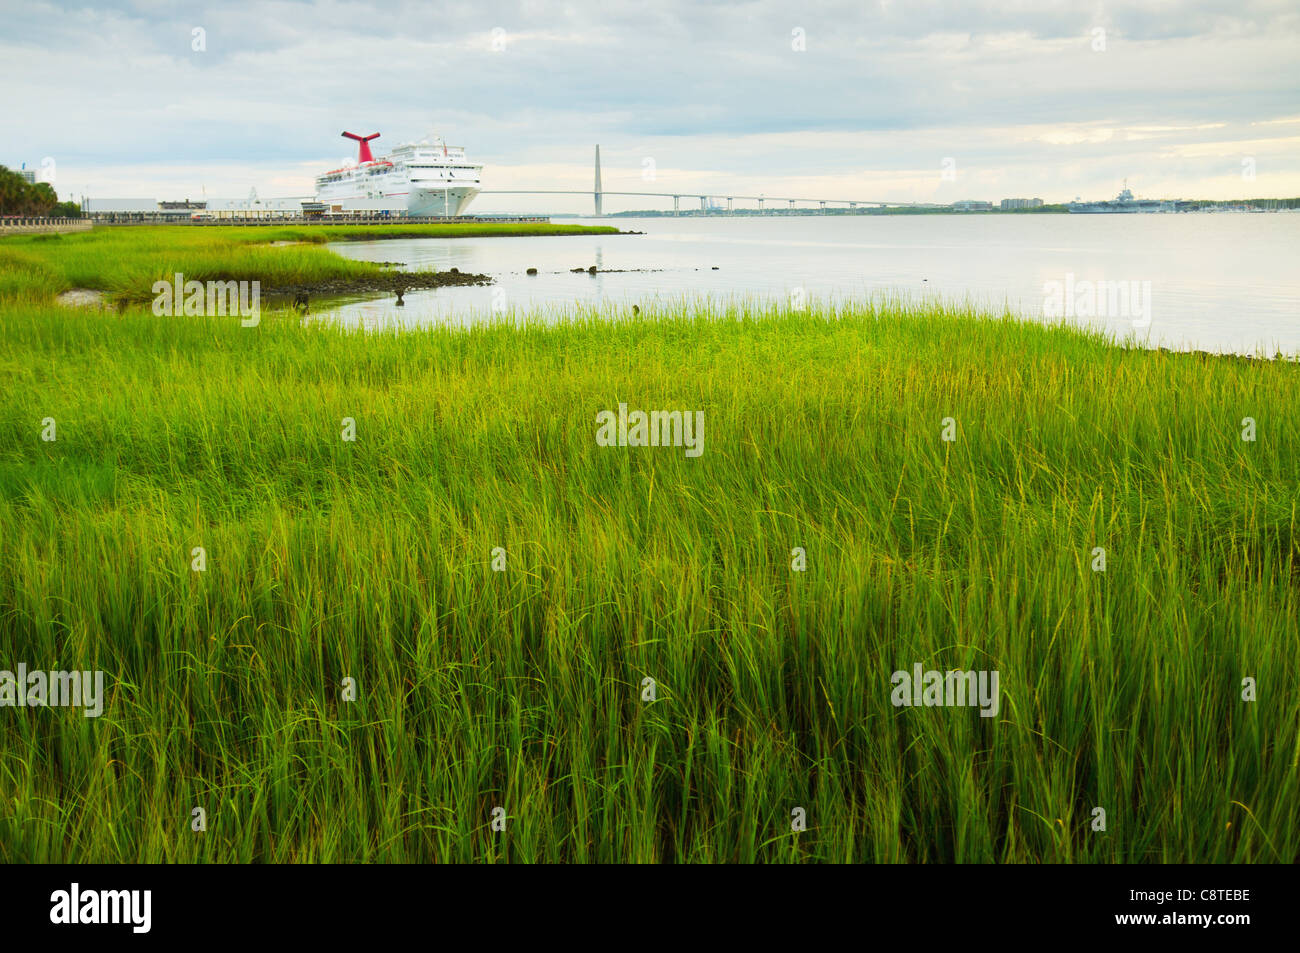 Stati Uniti d'America, Sud Carolina, Charleston, verde precipita sulla riva con traghetto in background Foto Stock